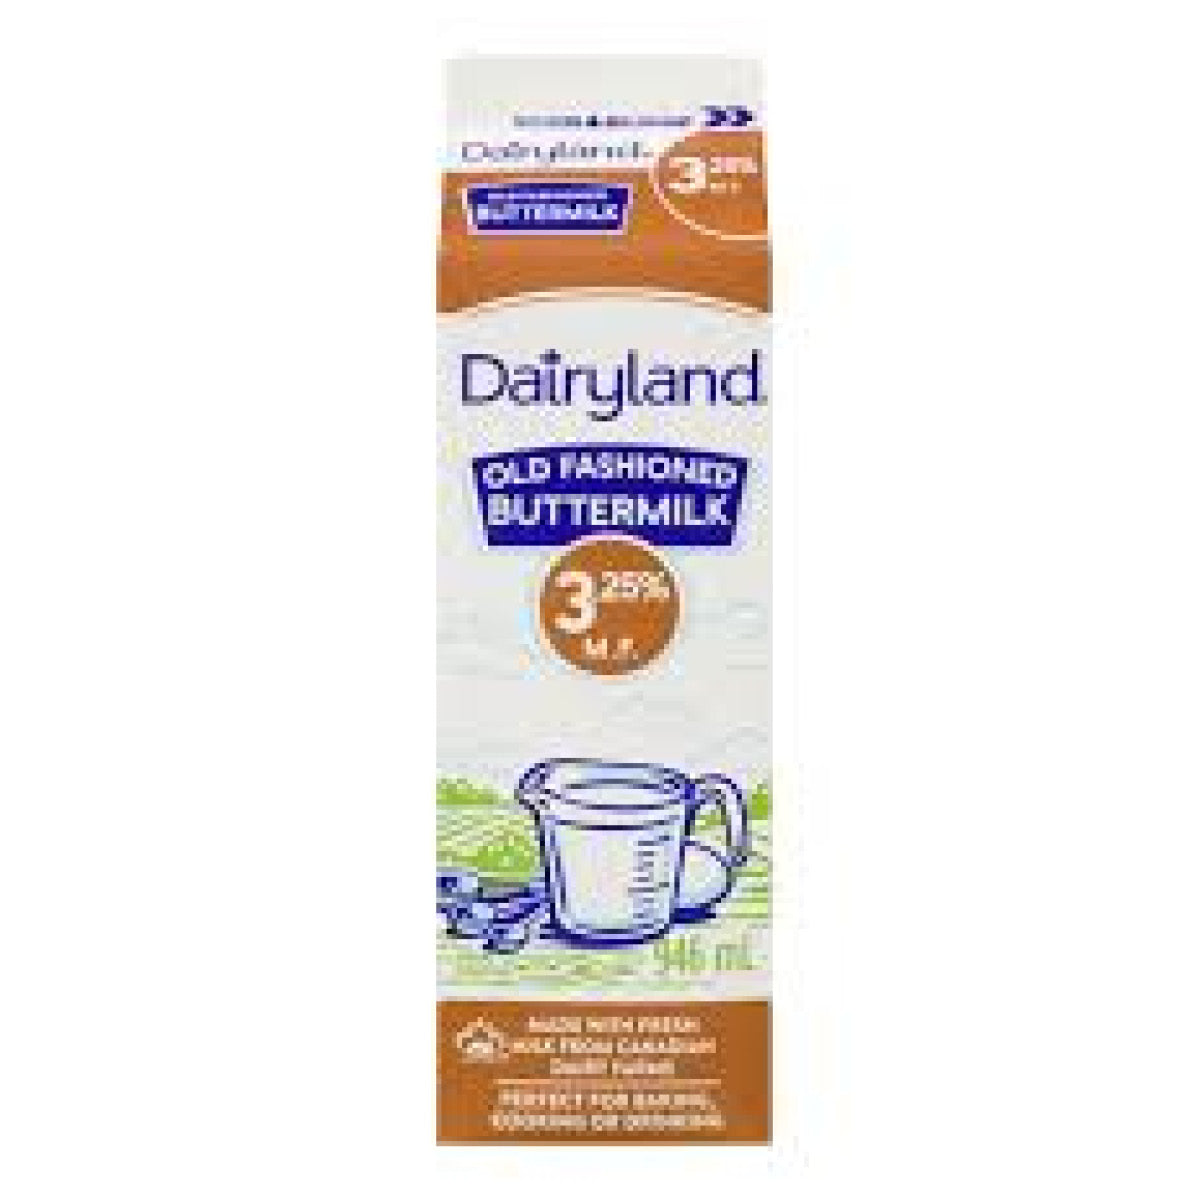 Dairyland Buttermilk 3.25%, 946ml